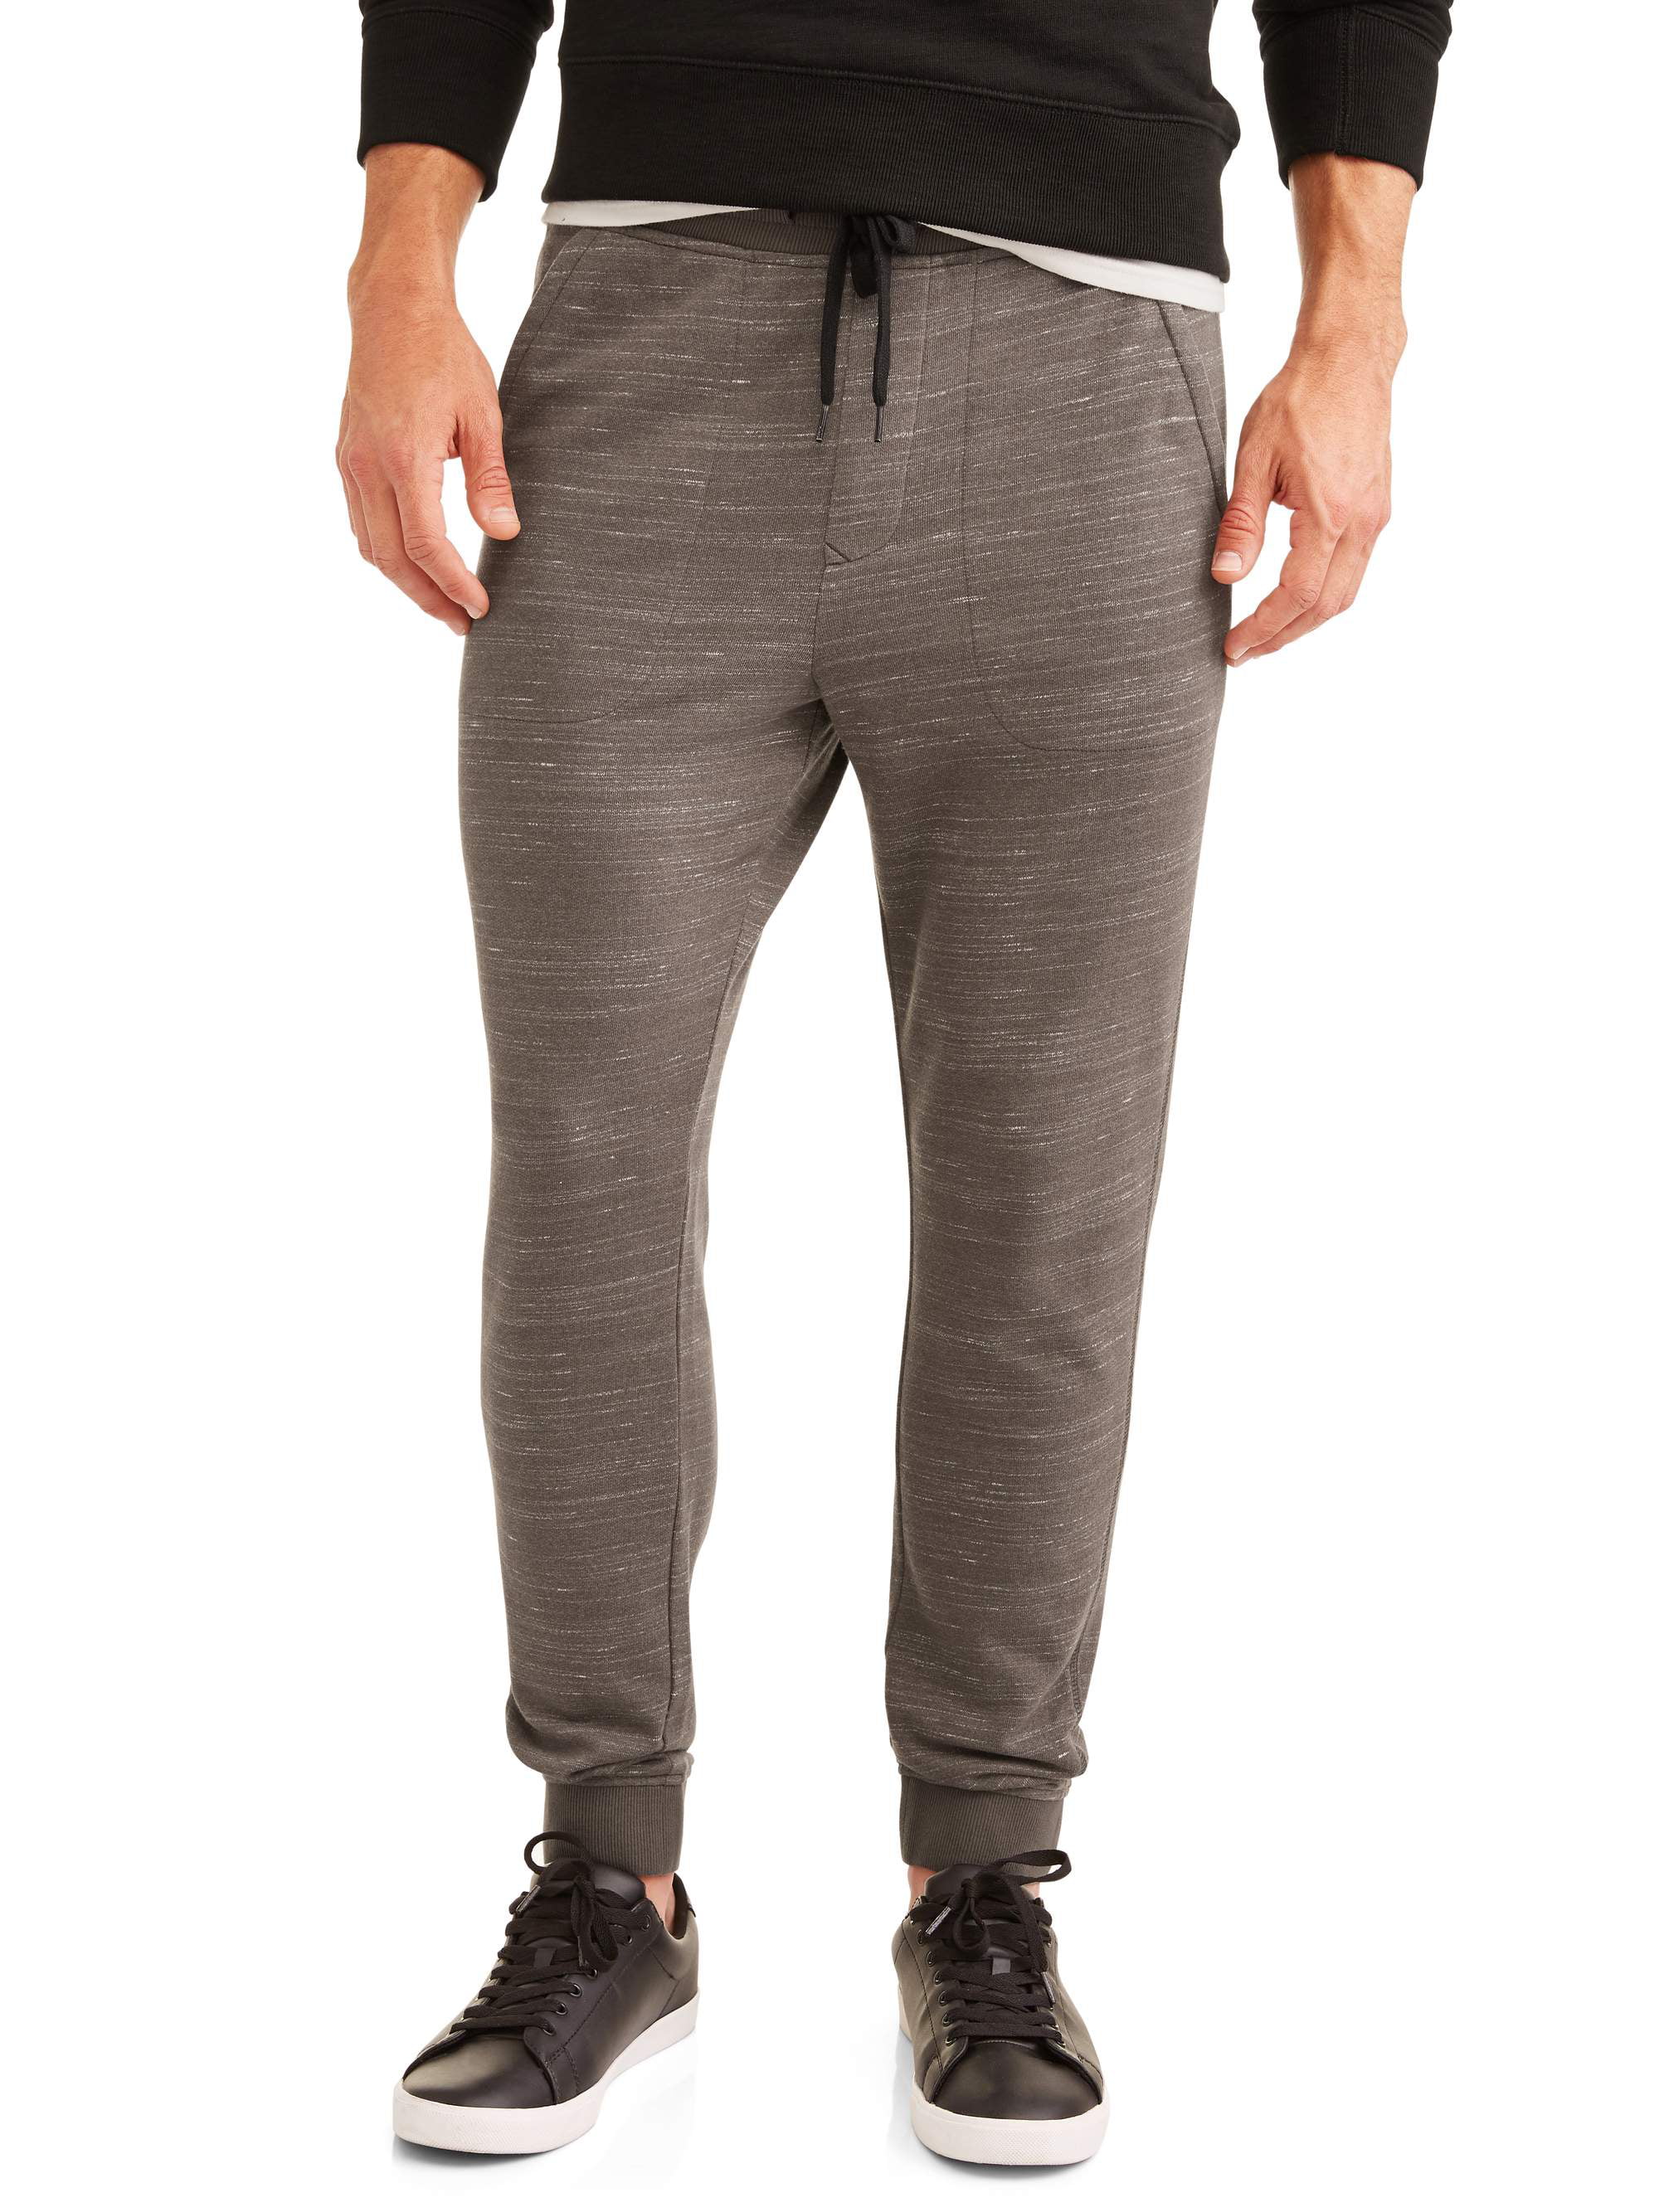 Men's Marled Knit Jogger Pants - Walmart.com